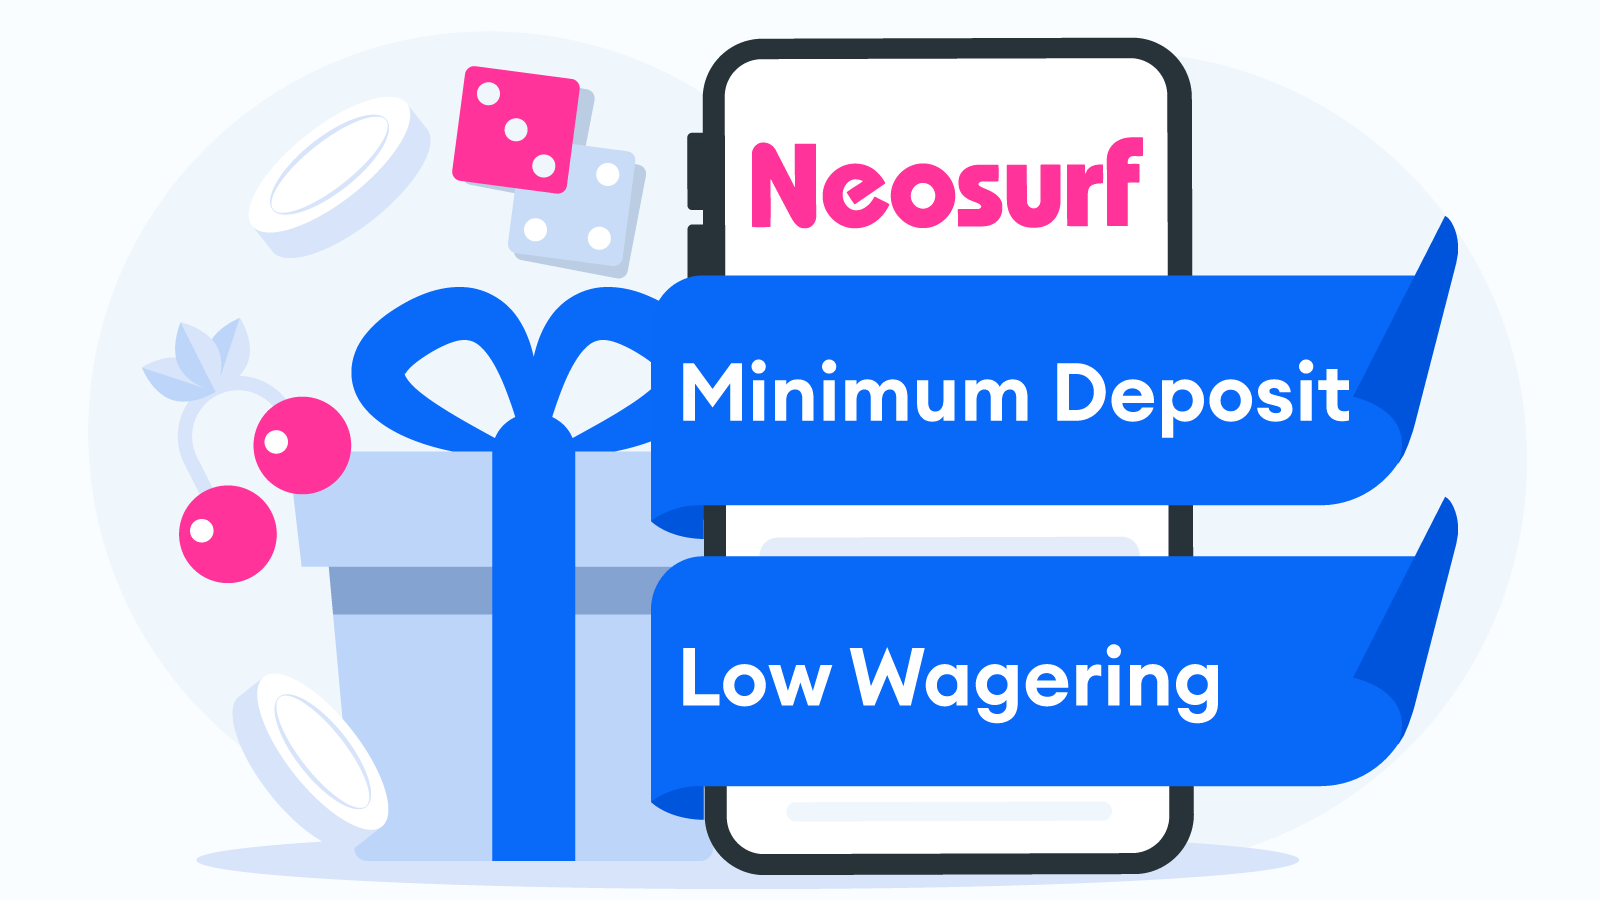 Casino Bonuses to Claim via Neosurf